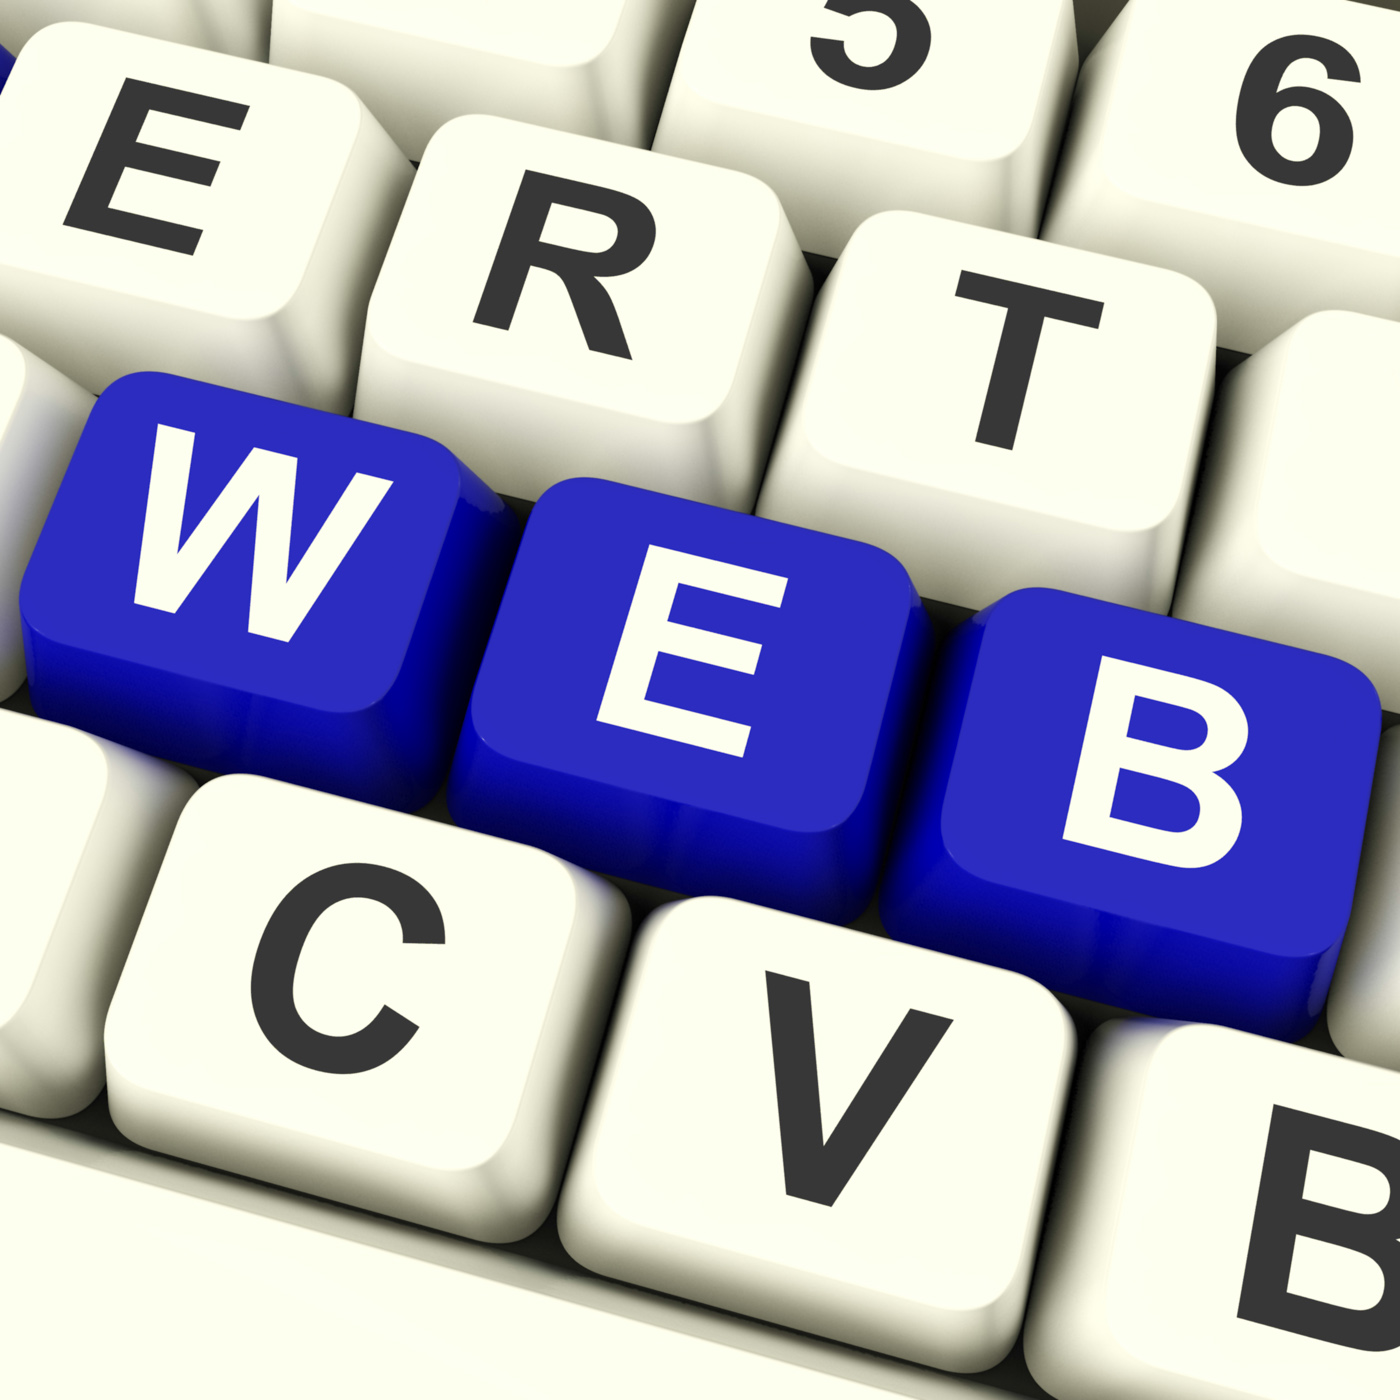 Web computer keys showing online websites or internet photo